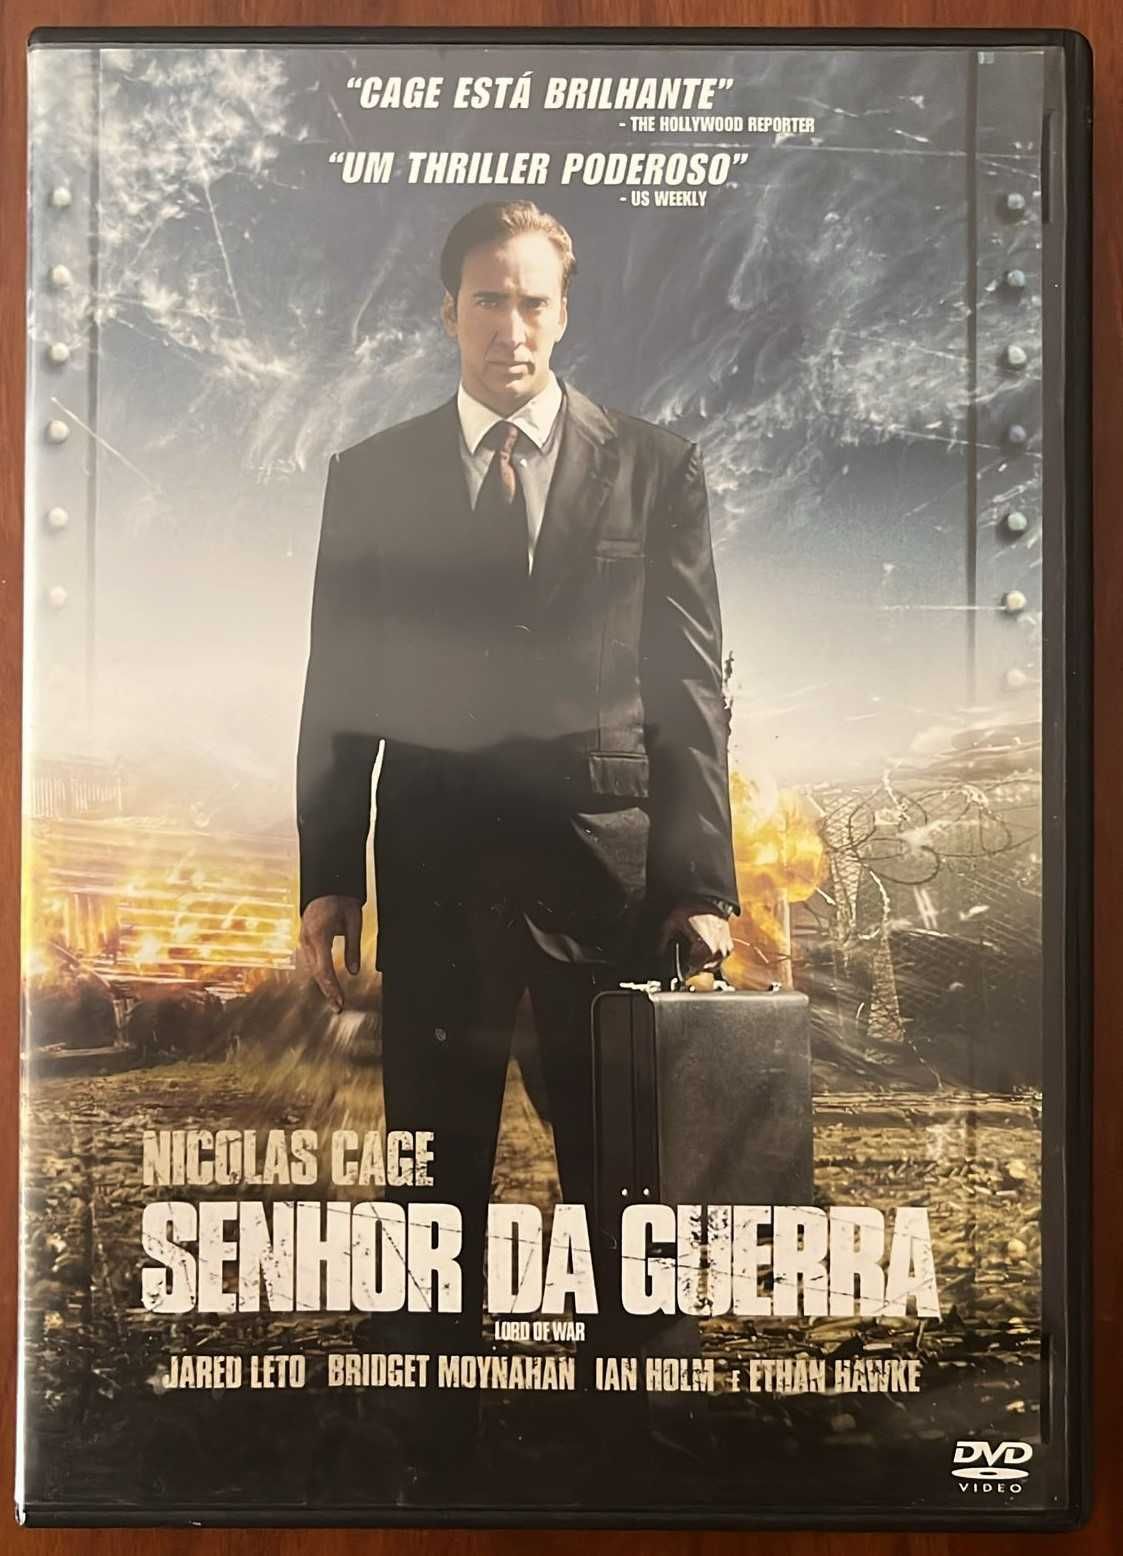 DVD "Senhor da Guerra" com Nicolas Cage